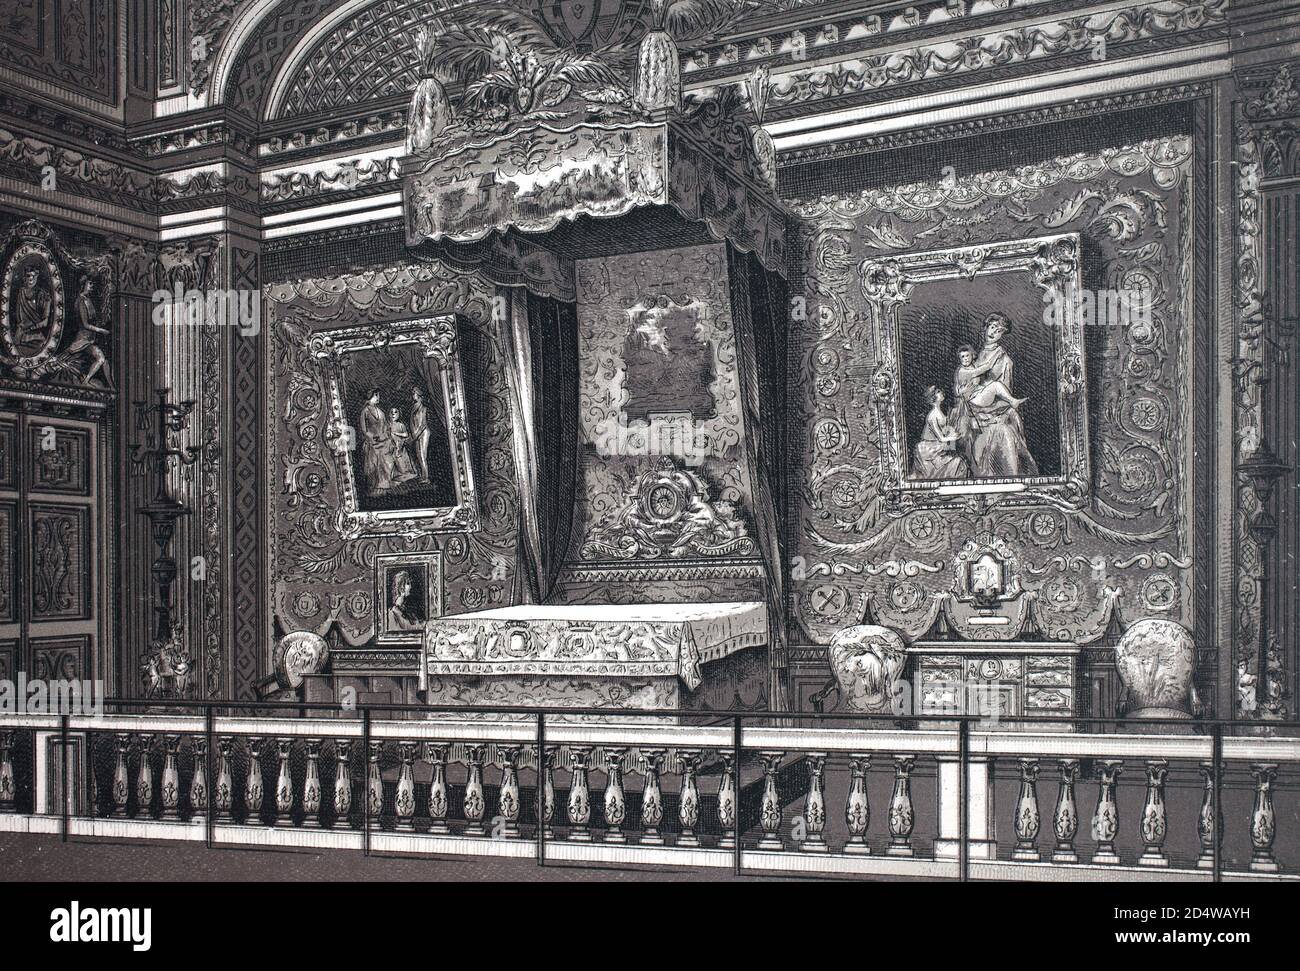 Versailles, Chambre er lit de Louis 14, königliches Schlafzimmer von Ludwig dem 14., Frankreich, historische Kupferstich von 1860 Stockfoto